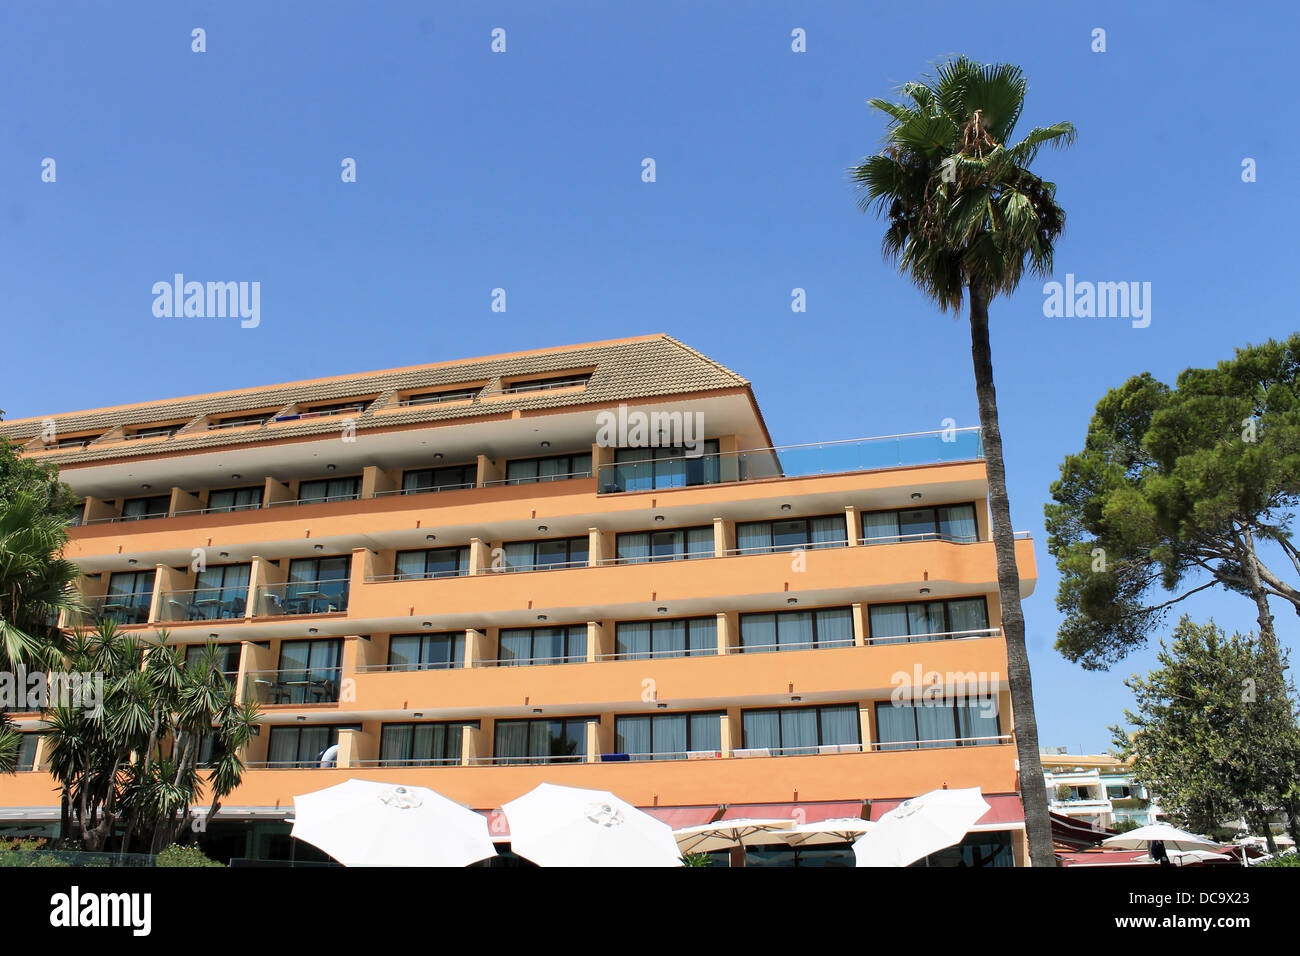 Malerische Aussicht auf spanischen Touristen Hotel und Palm Tree, Mallorca, Spanien. Stockfoto